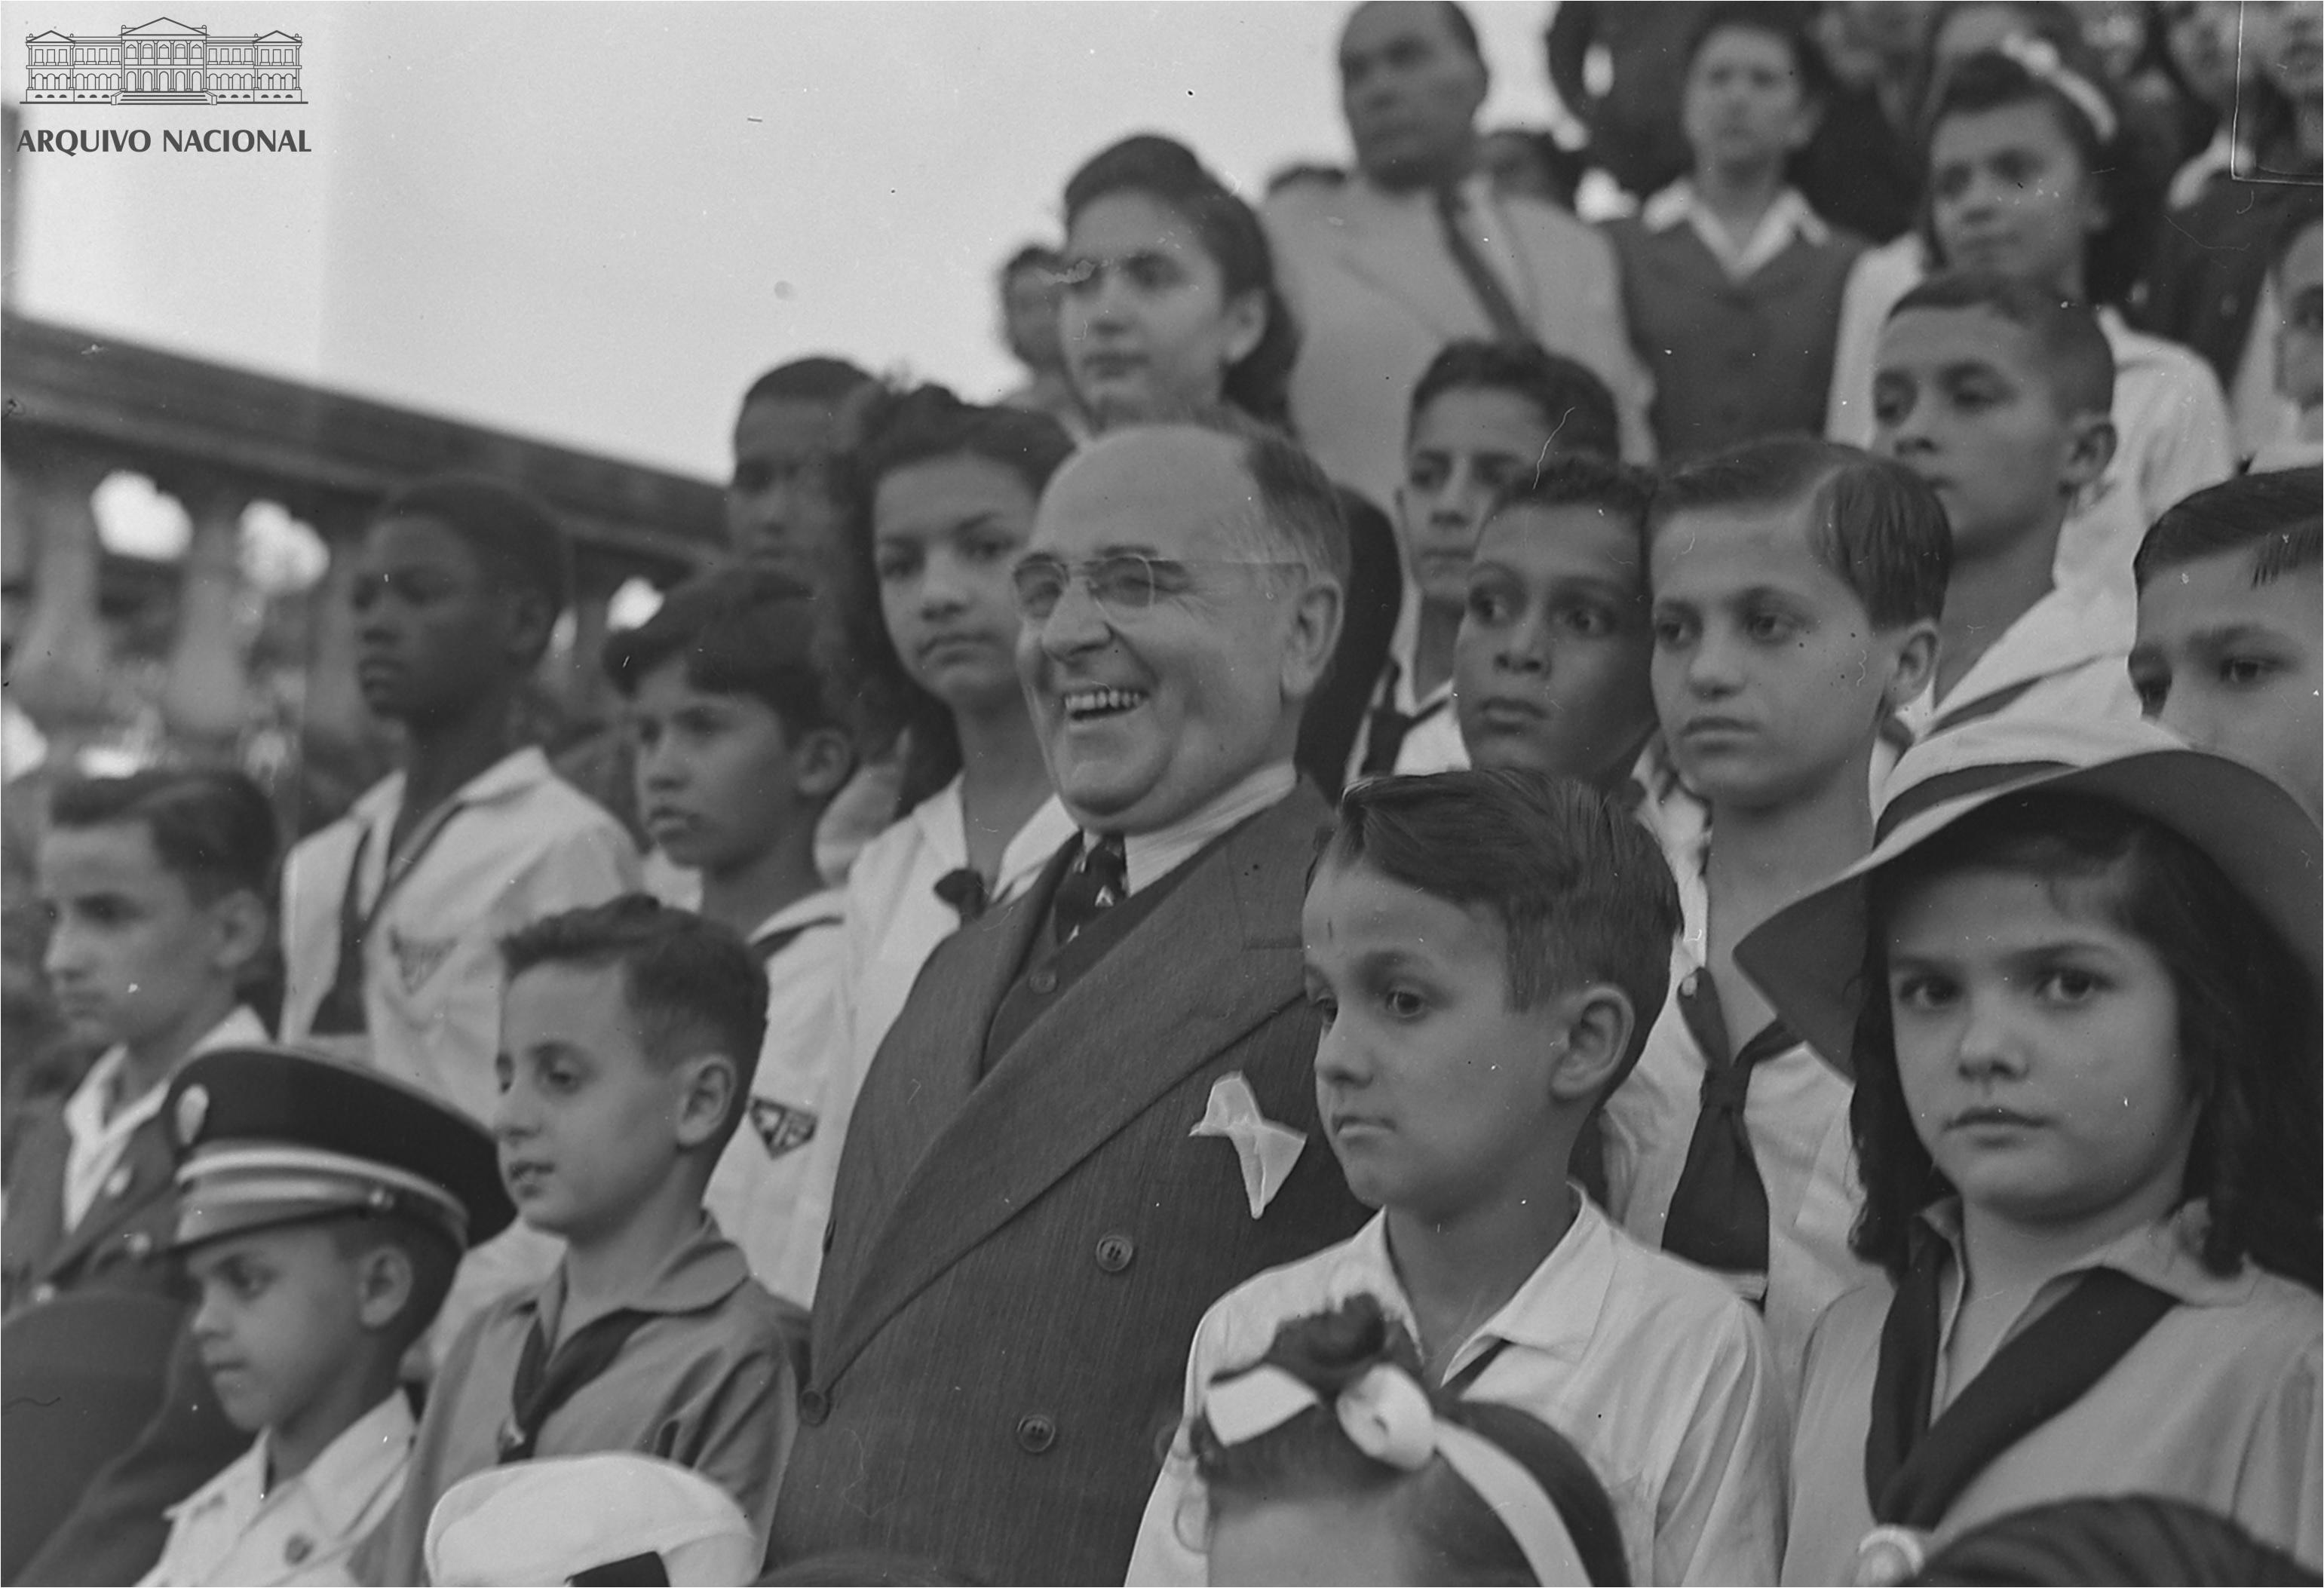 Foto em preto e branco de Getúlio Vargas cercado de crianças. Ele usa terno cinza, está de óculos e sorri. As crianças vestem o uniforme escolar da época e estão sérias 